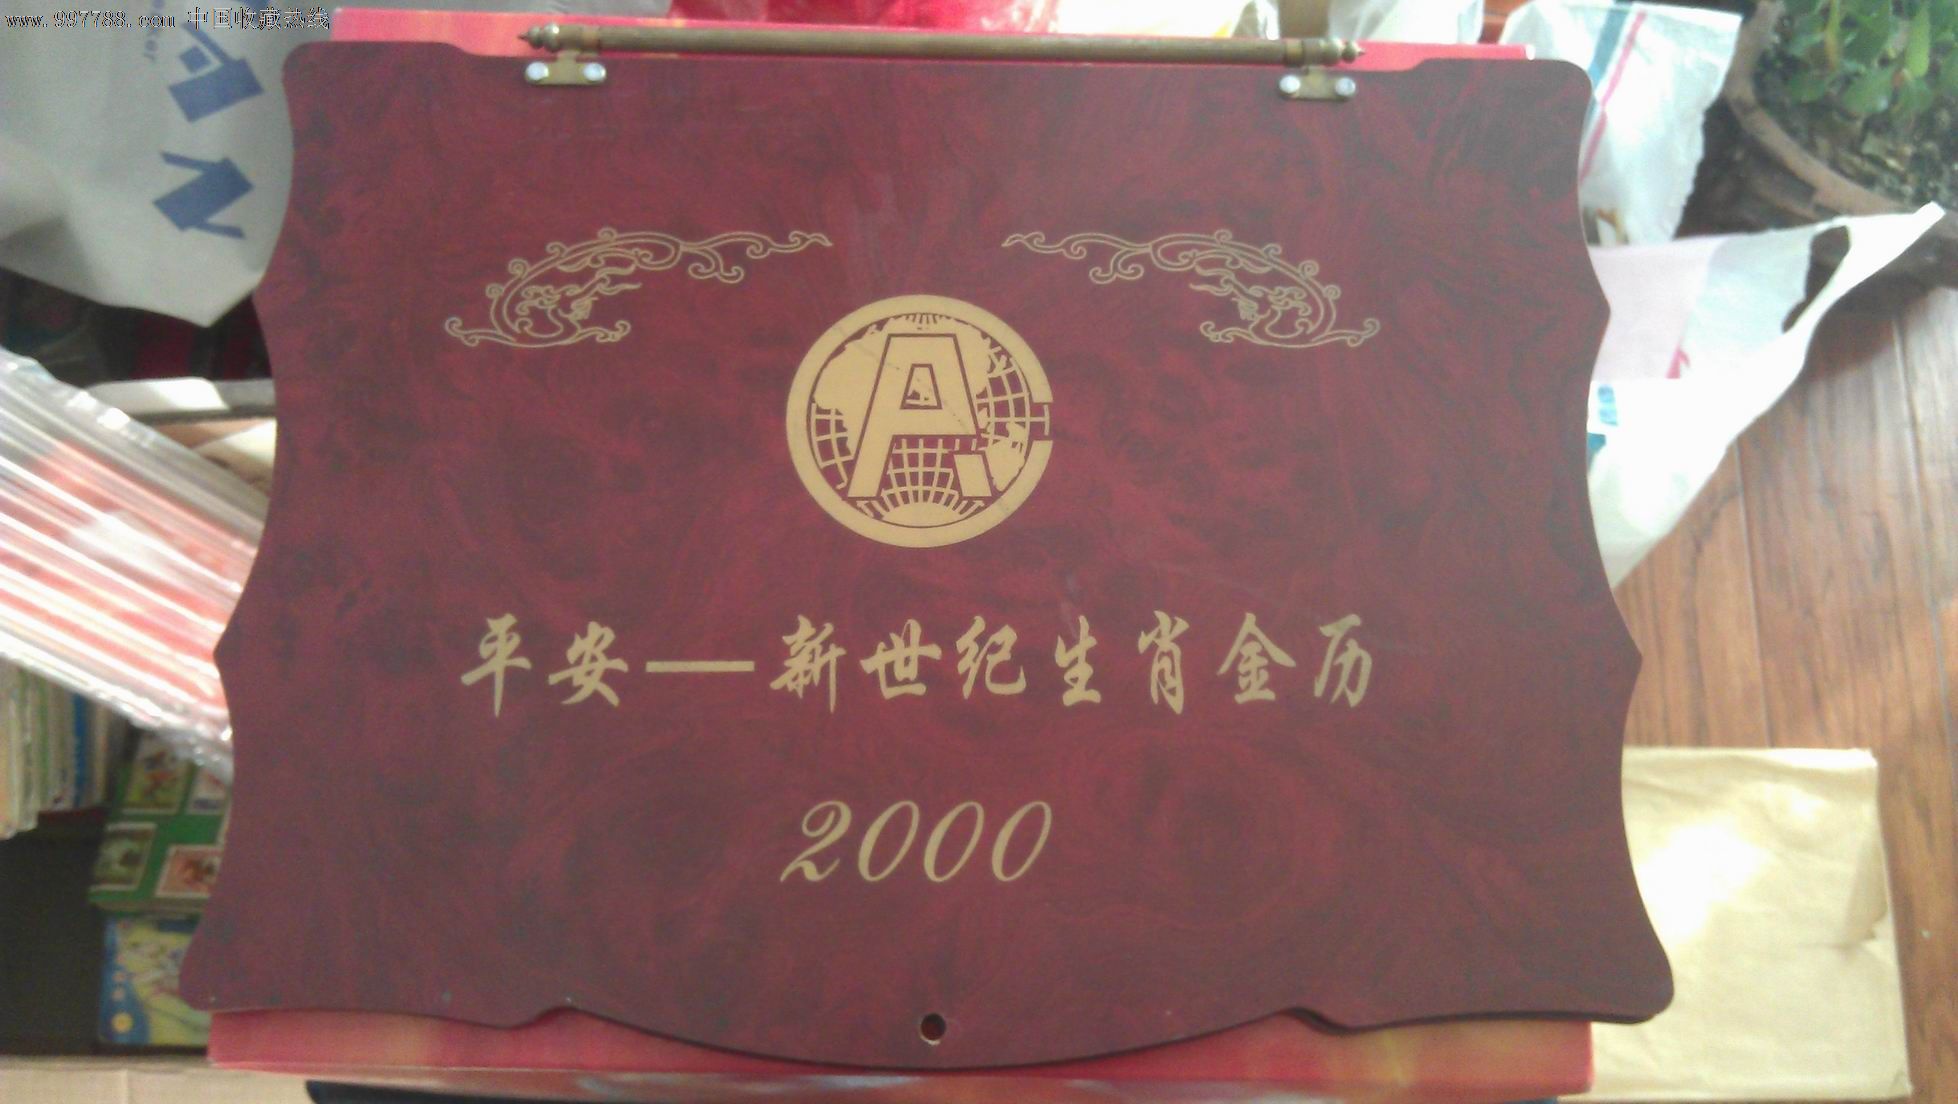 2000年新世纪--生肖金历,内镶嵌有十二生肖纪